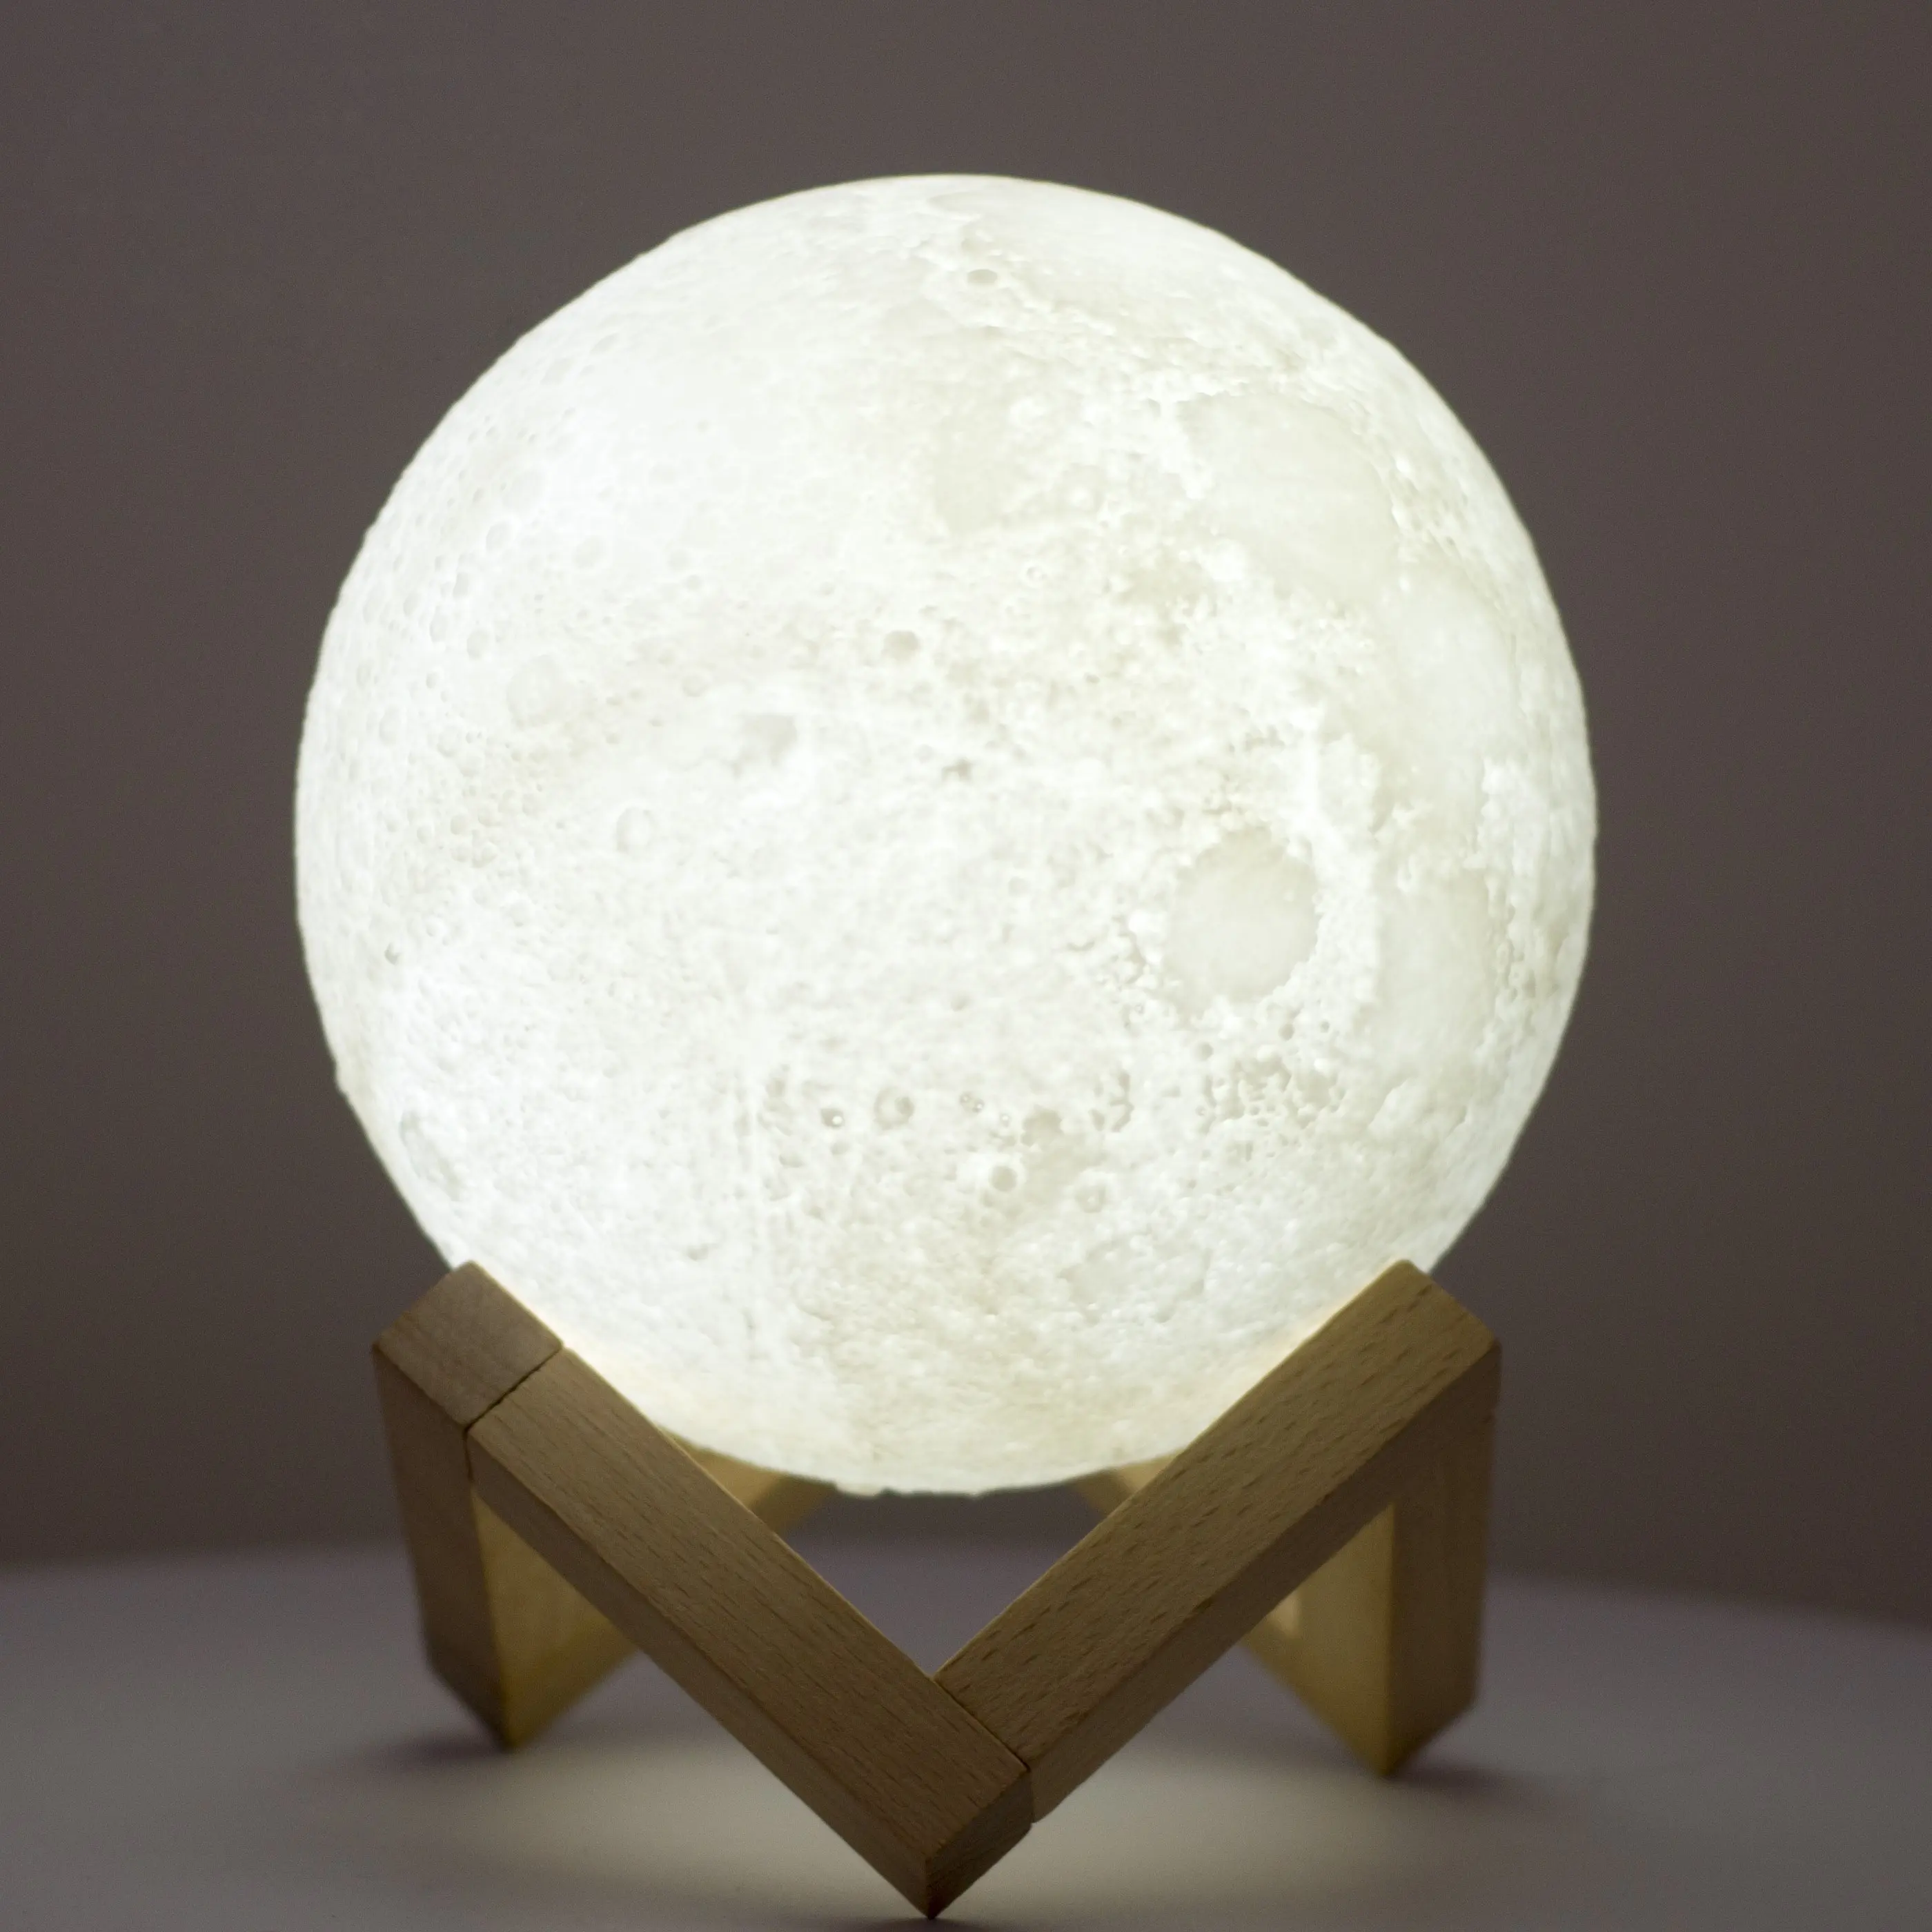 3D भ्रम नल के साथ Dimmable नियंत्रण यूएसबी 16 रंग मिनी पूर्ण नेतृत्व में चंद्रमा के आकार का 3d चंद्रमा रात को प्रकाश दीपक का नेतृत्व किया दीपक